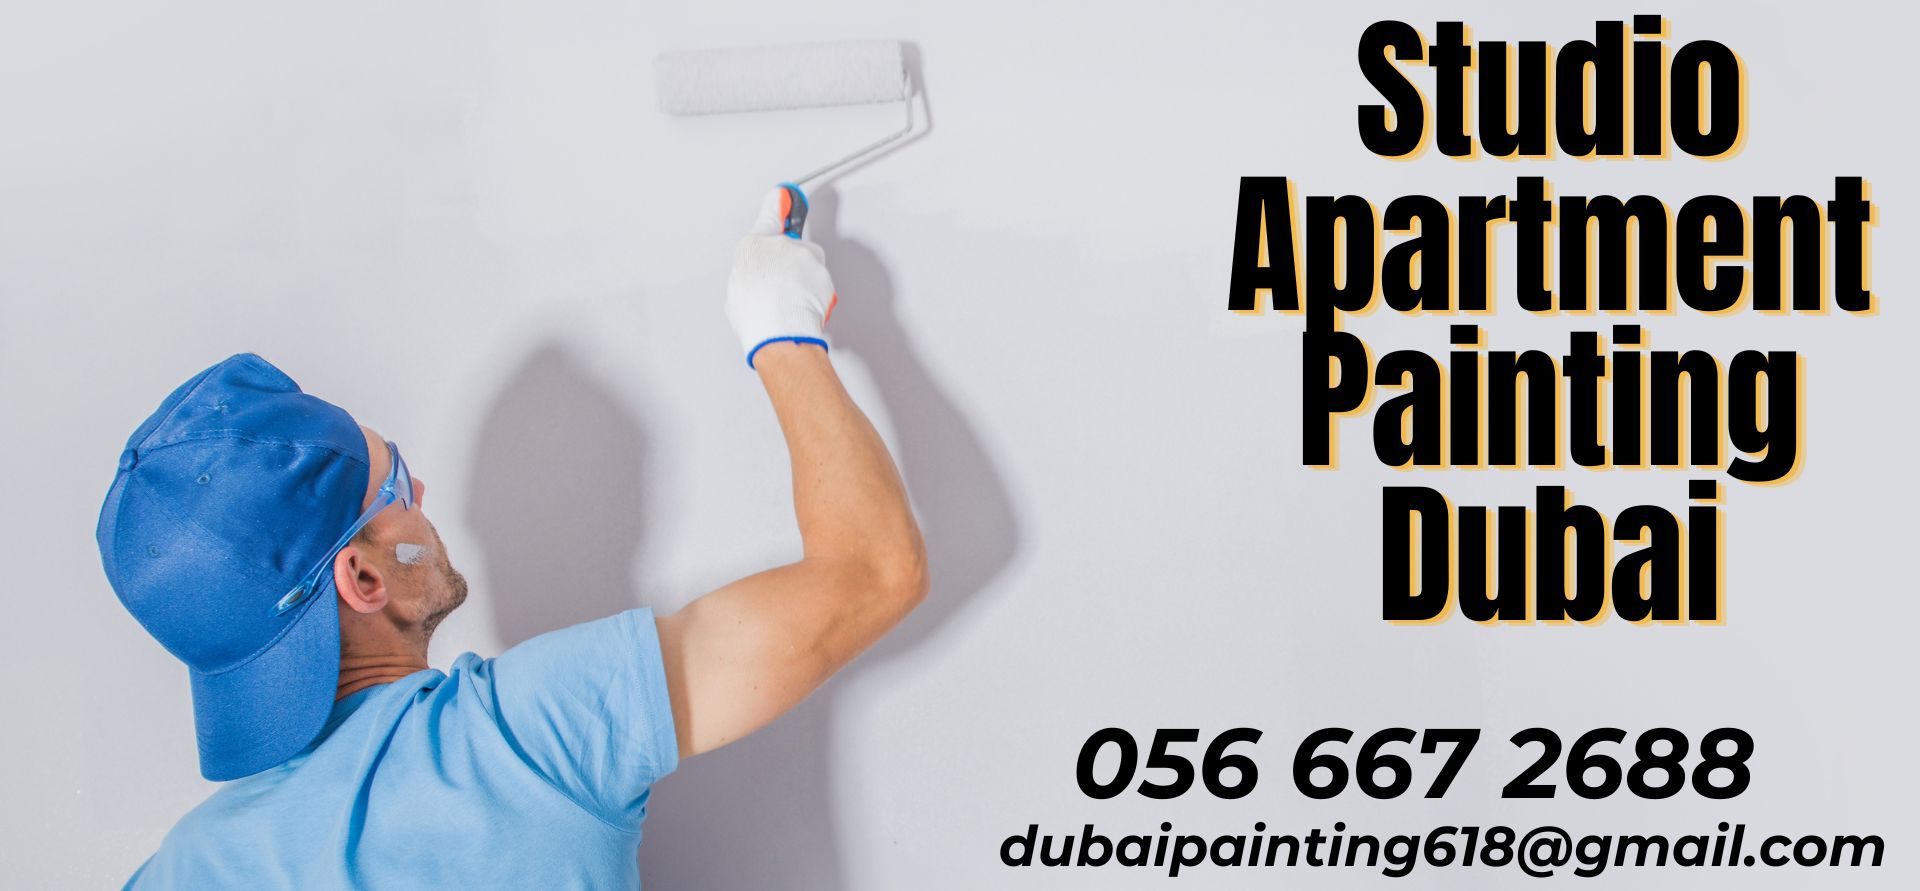 Studio Apartment Painting Dubai